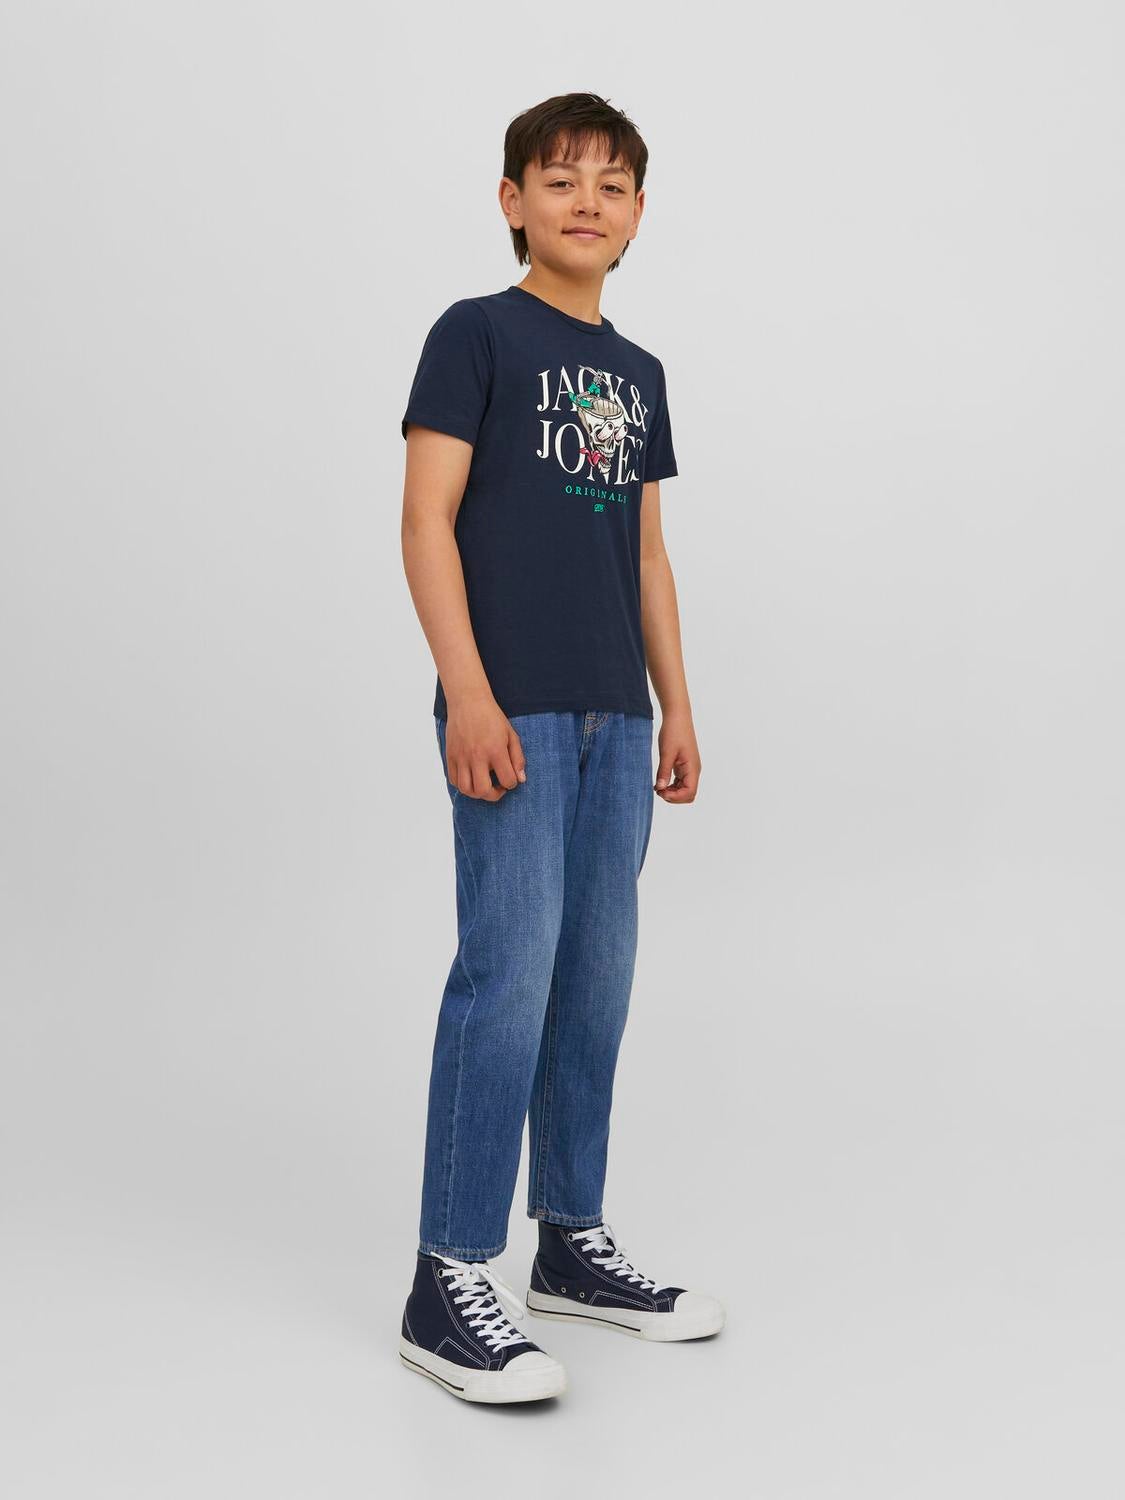 JJIFRANK JJORIGINIAL MF 283 Tapered fit jeans For boys